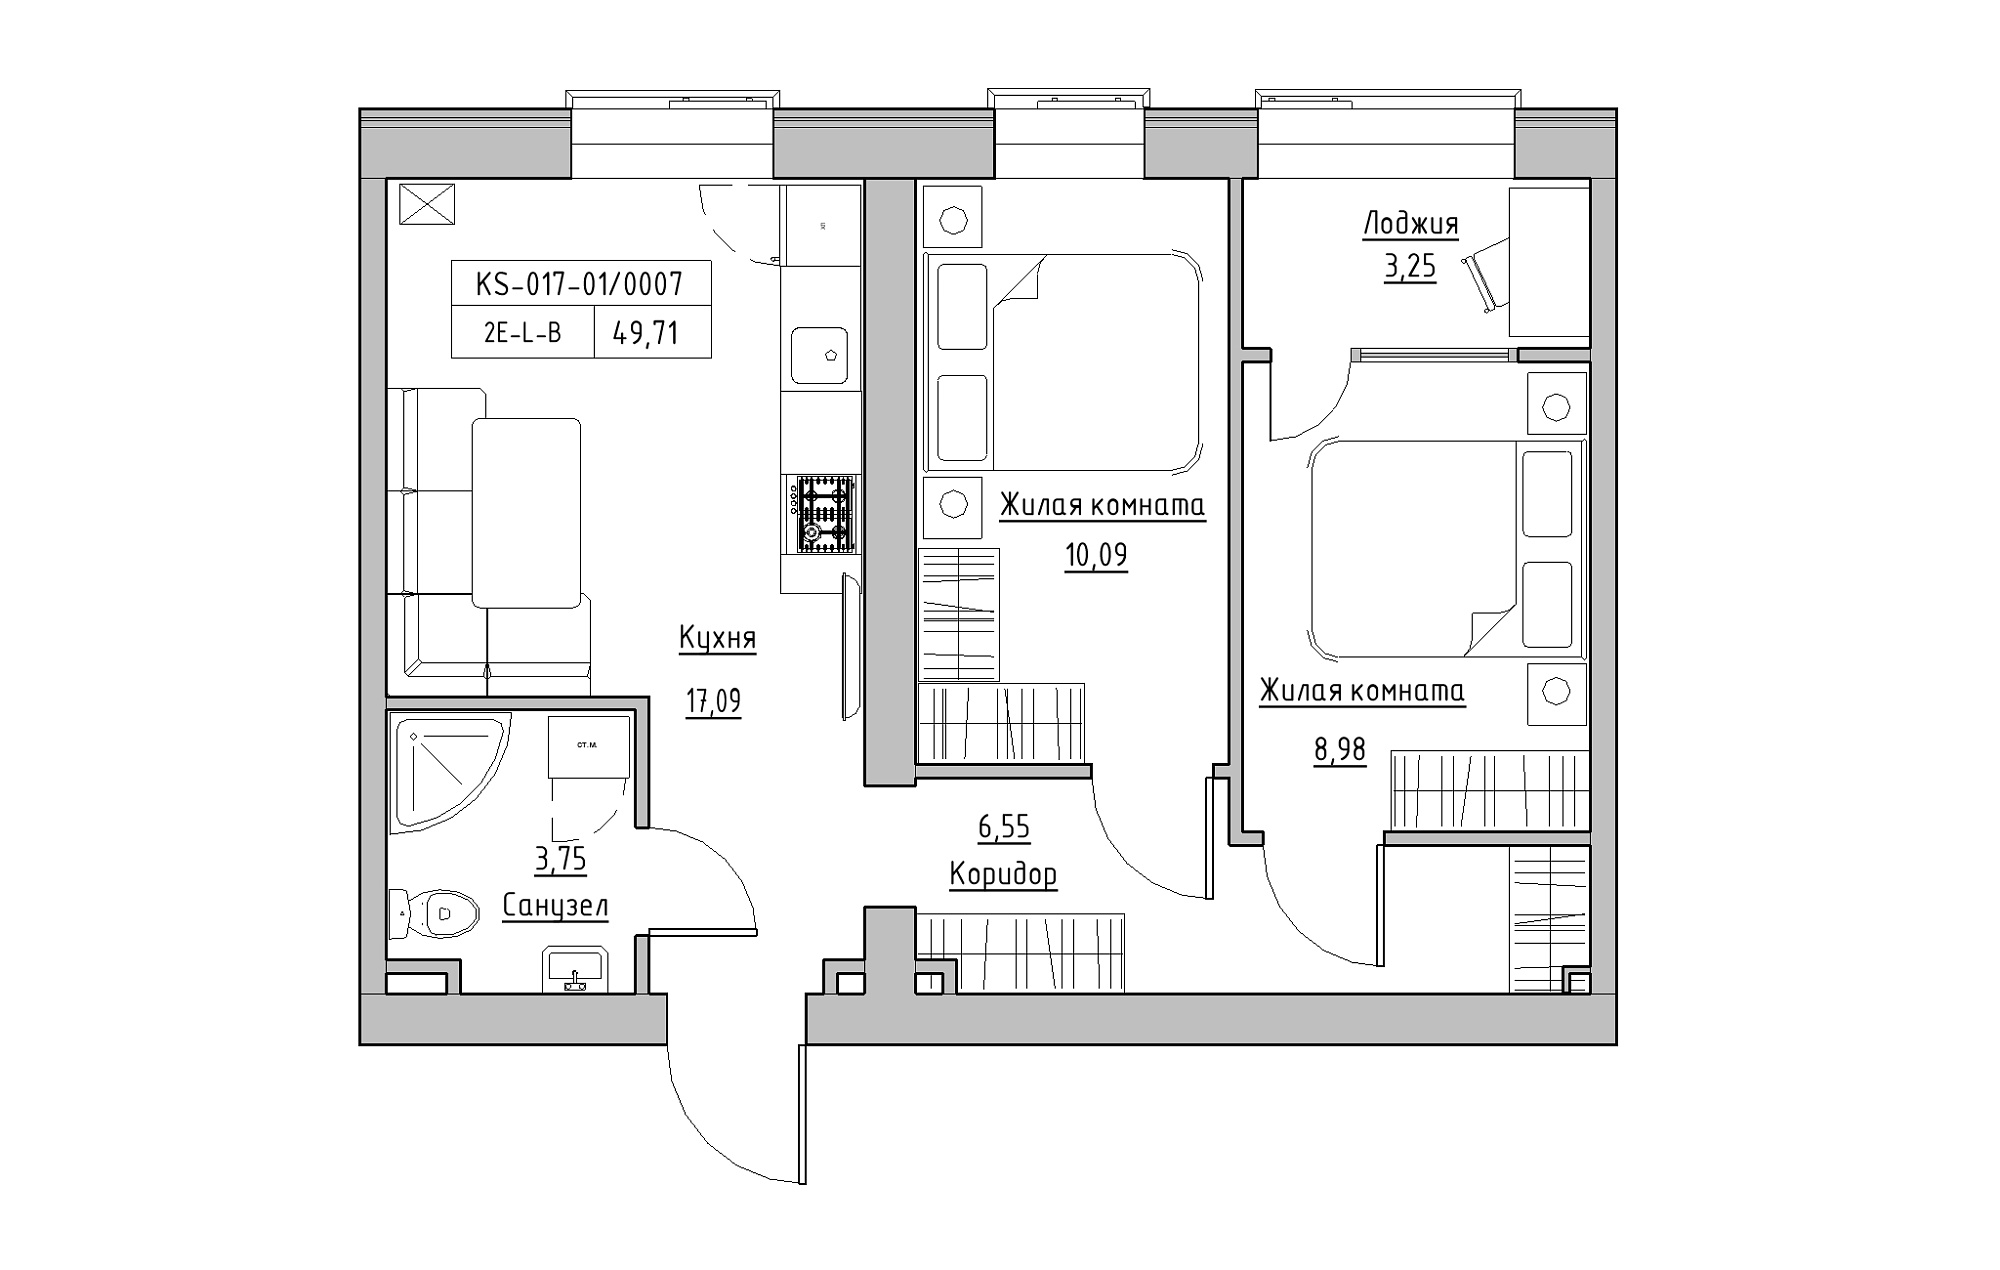 Планировка 2-к квартира площей 49.71м2, KS-017-01/0007.